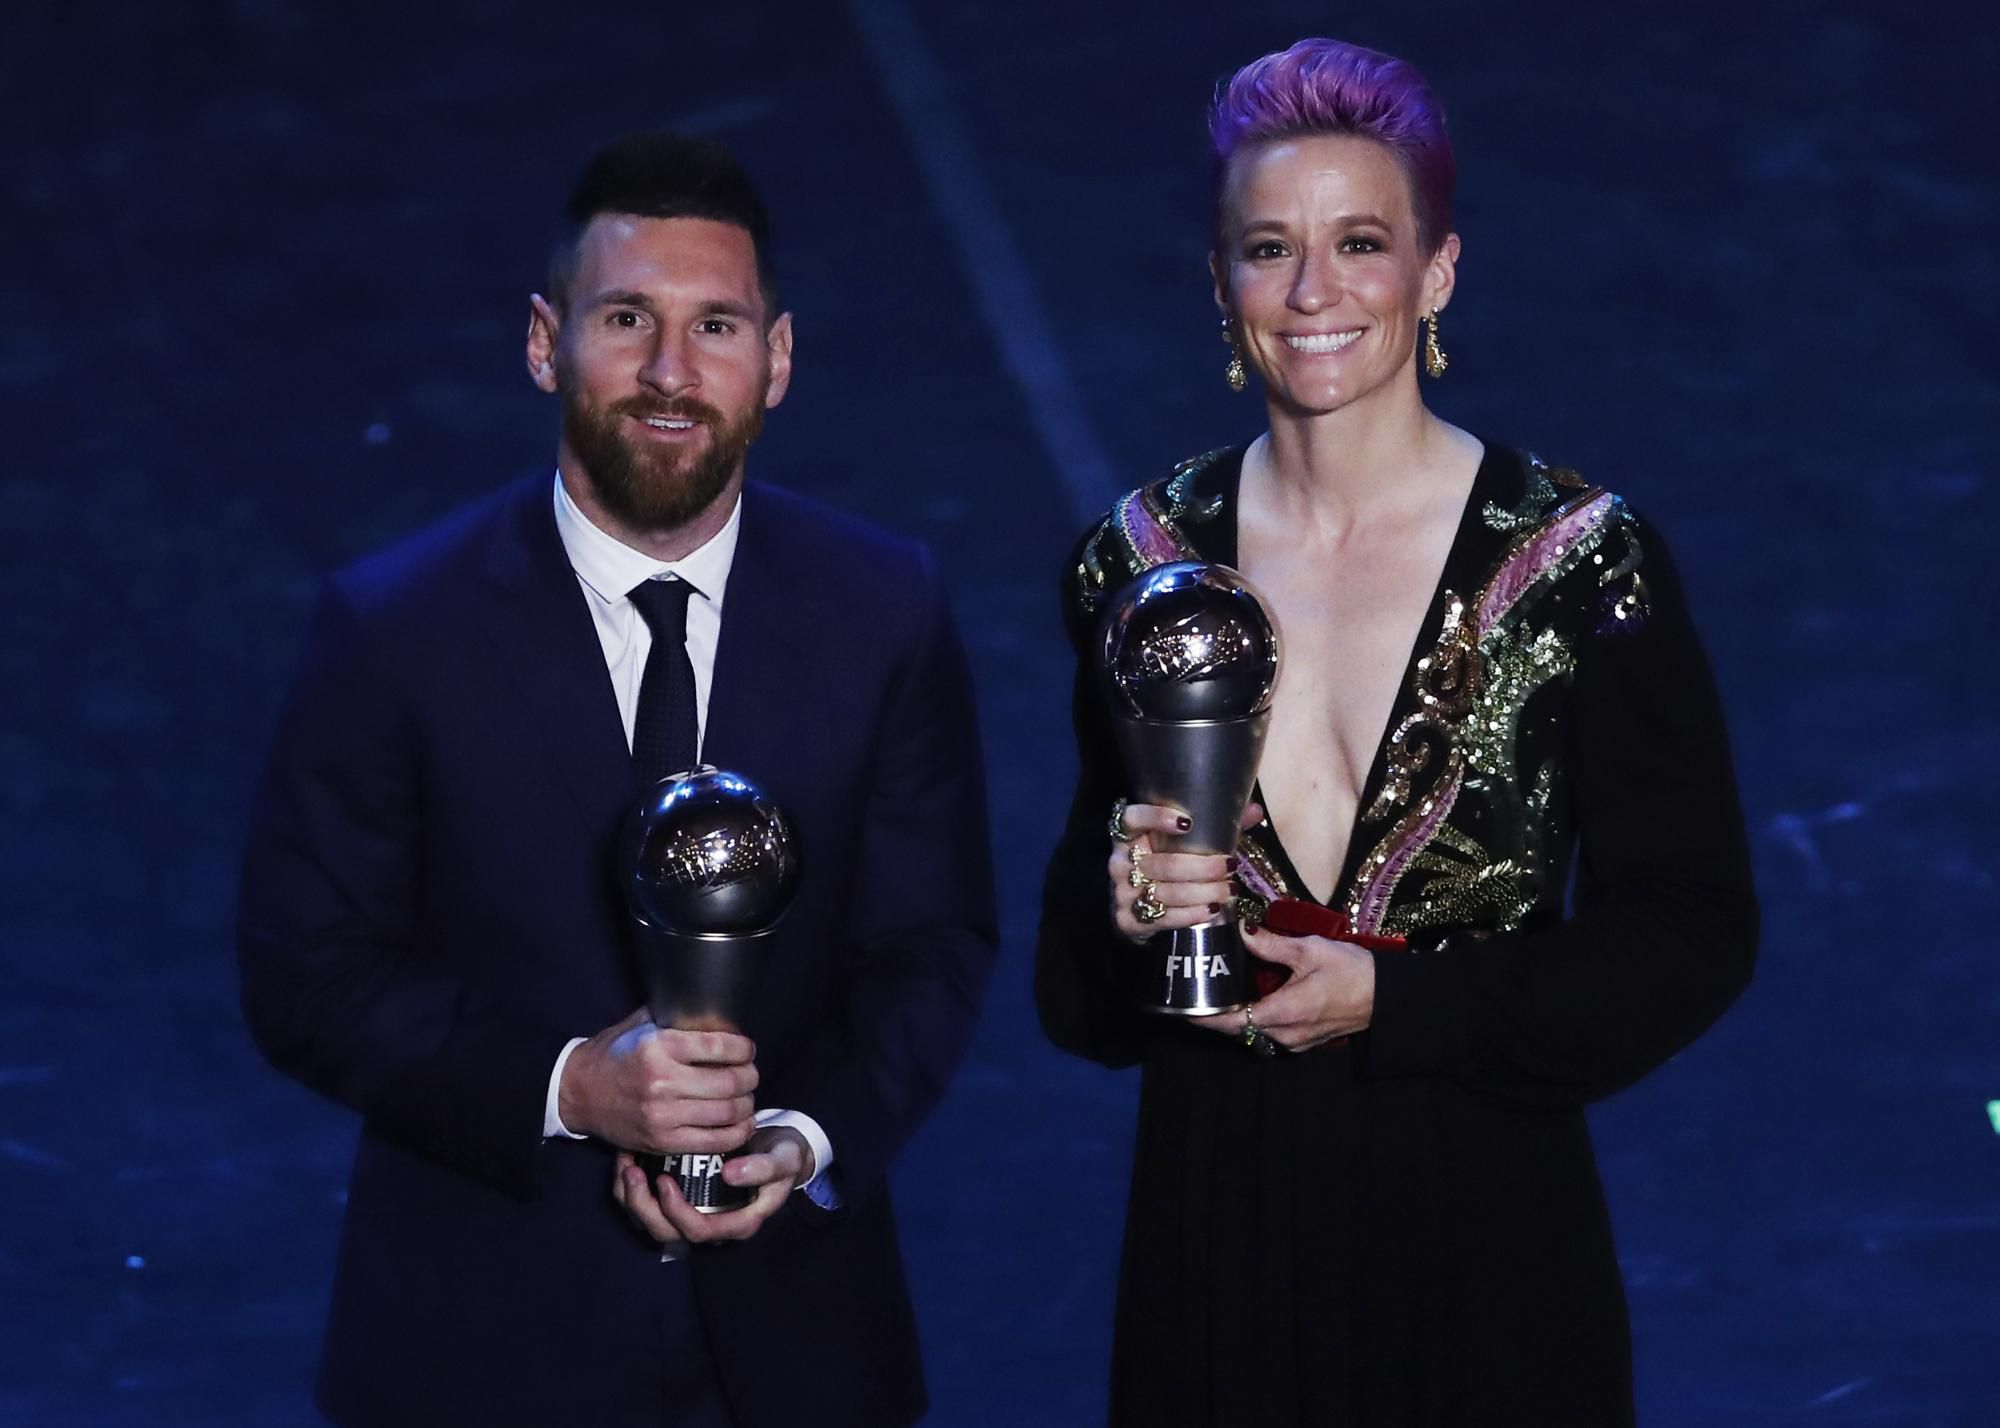 Futbalistka roka 2019 podľa FIFA Megan Rapinoeová a Lionel Messi.